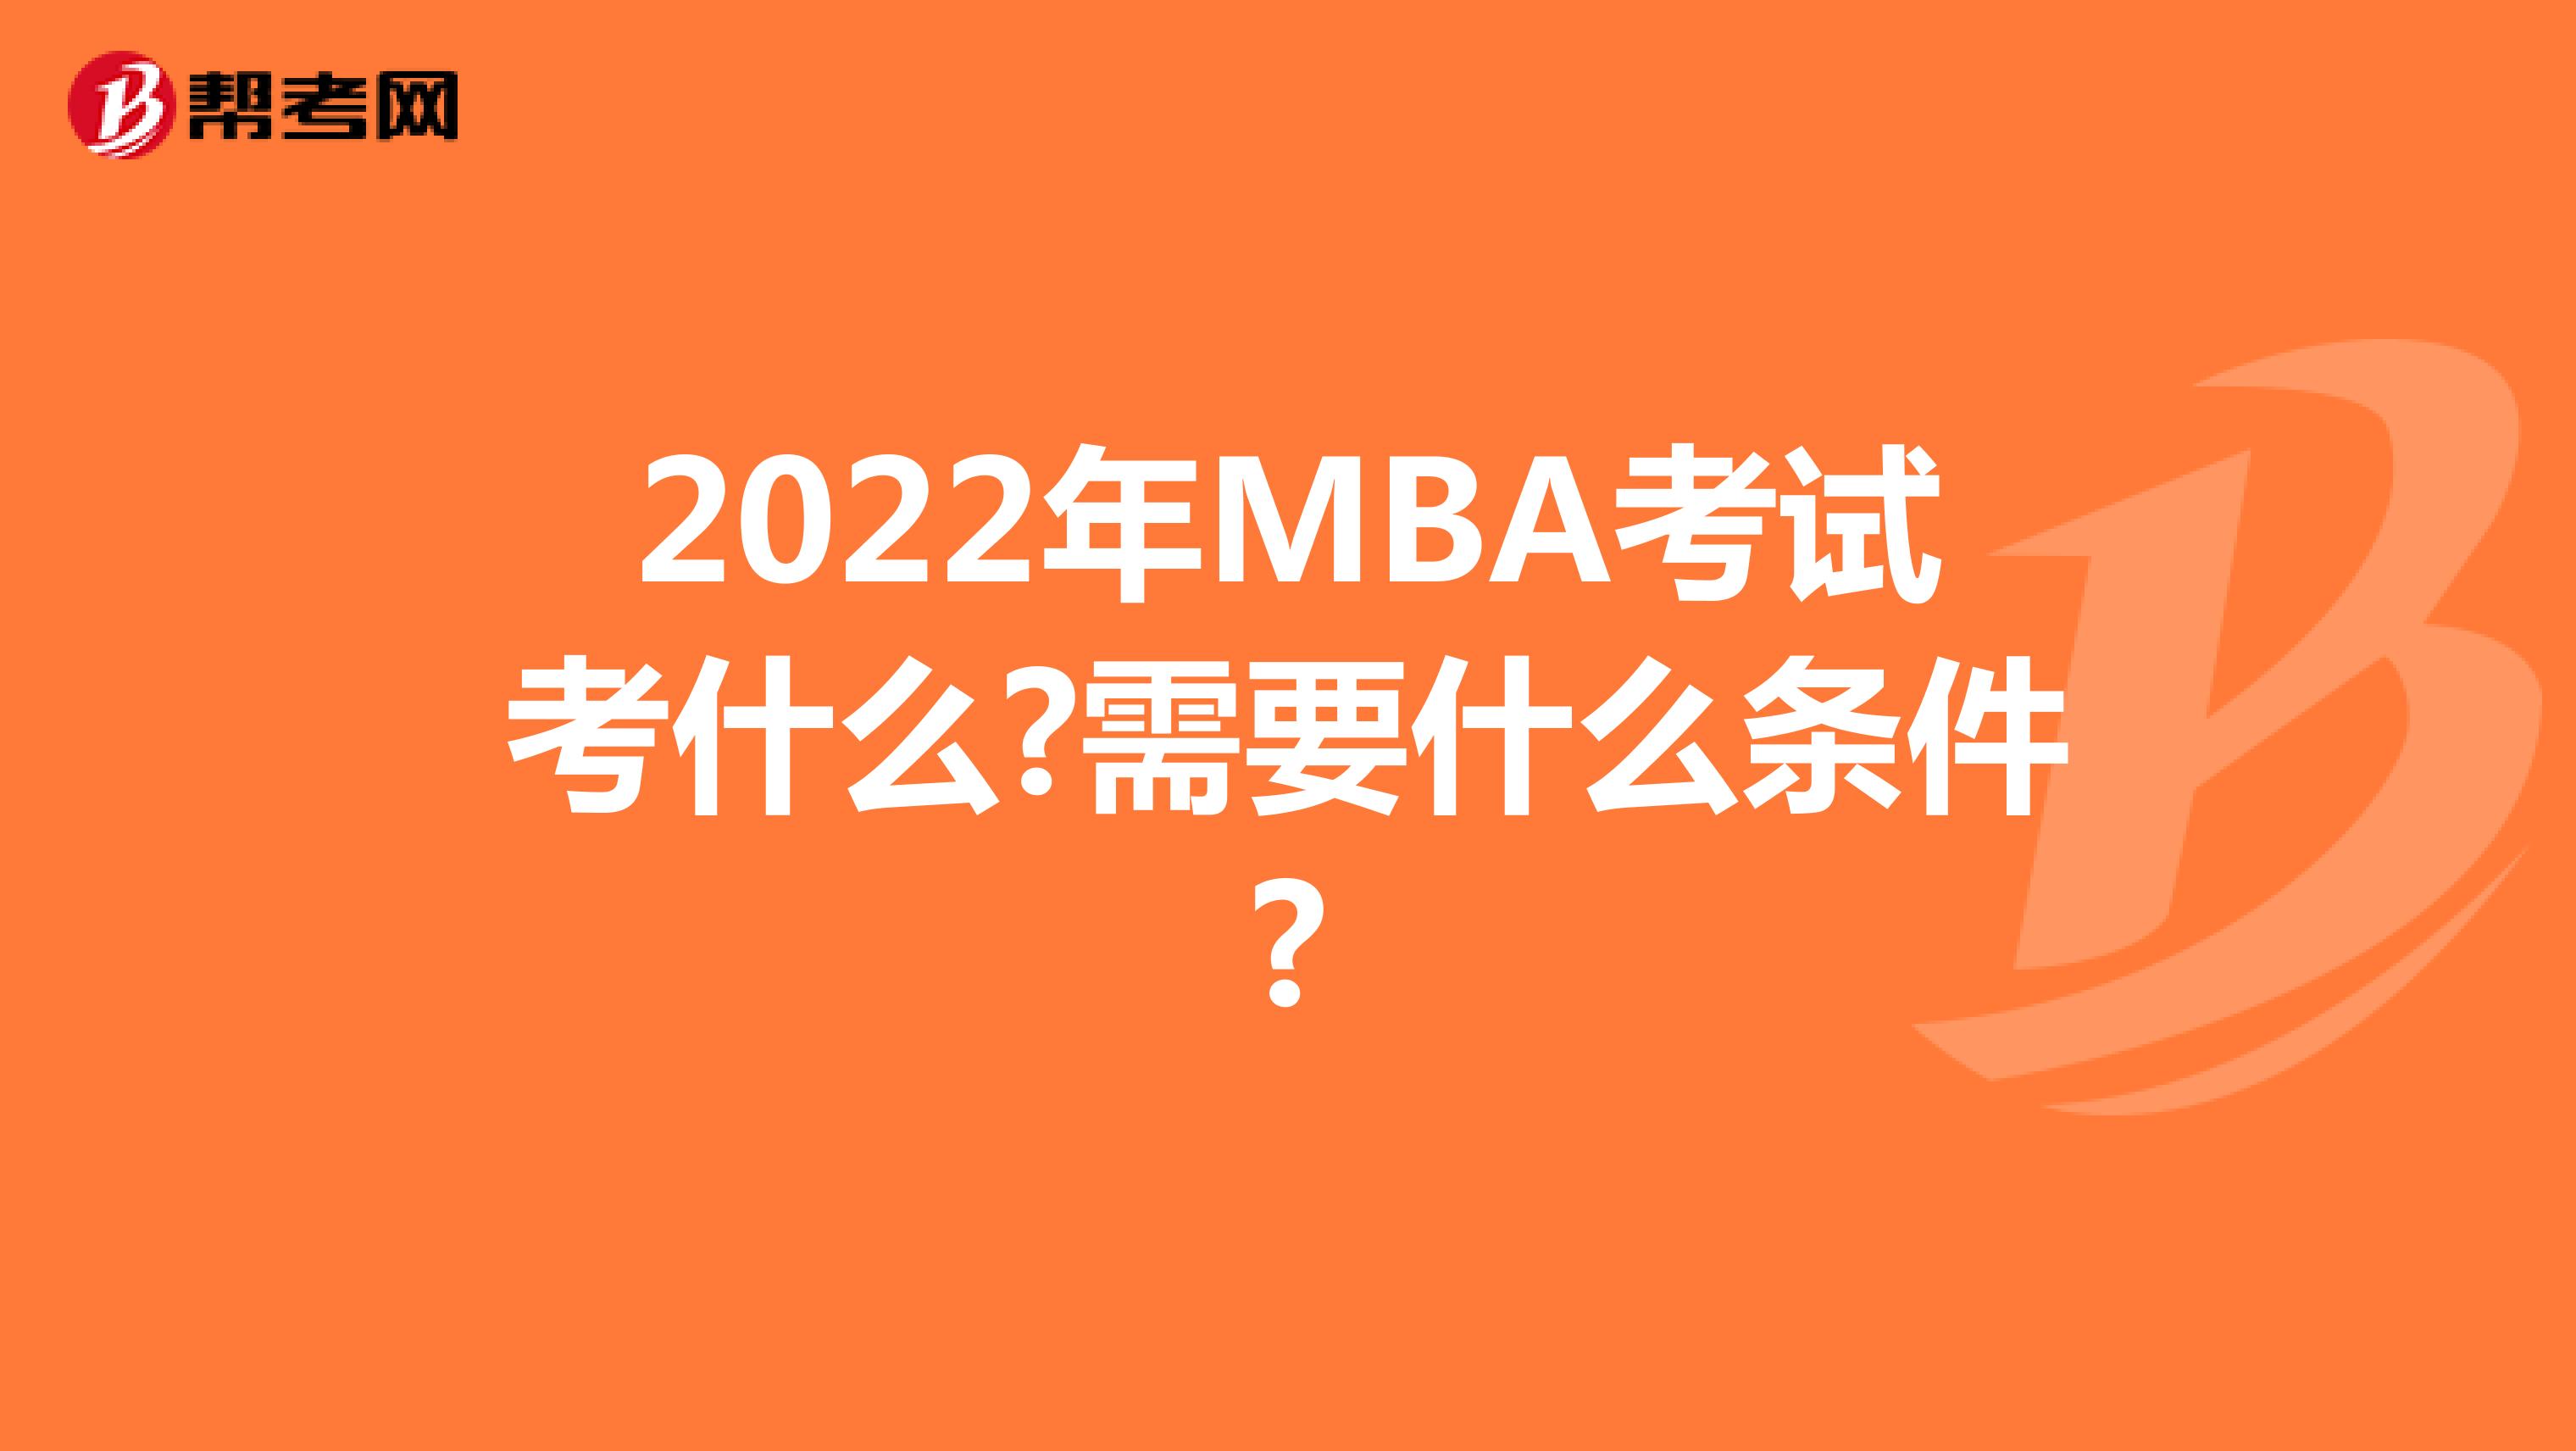 2022年MBA考试考什么?需要什么条件?